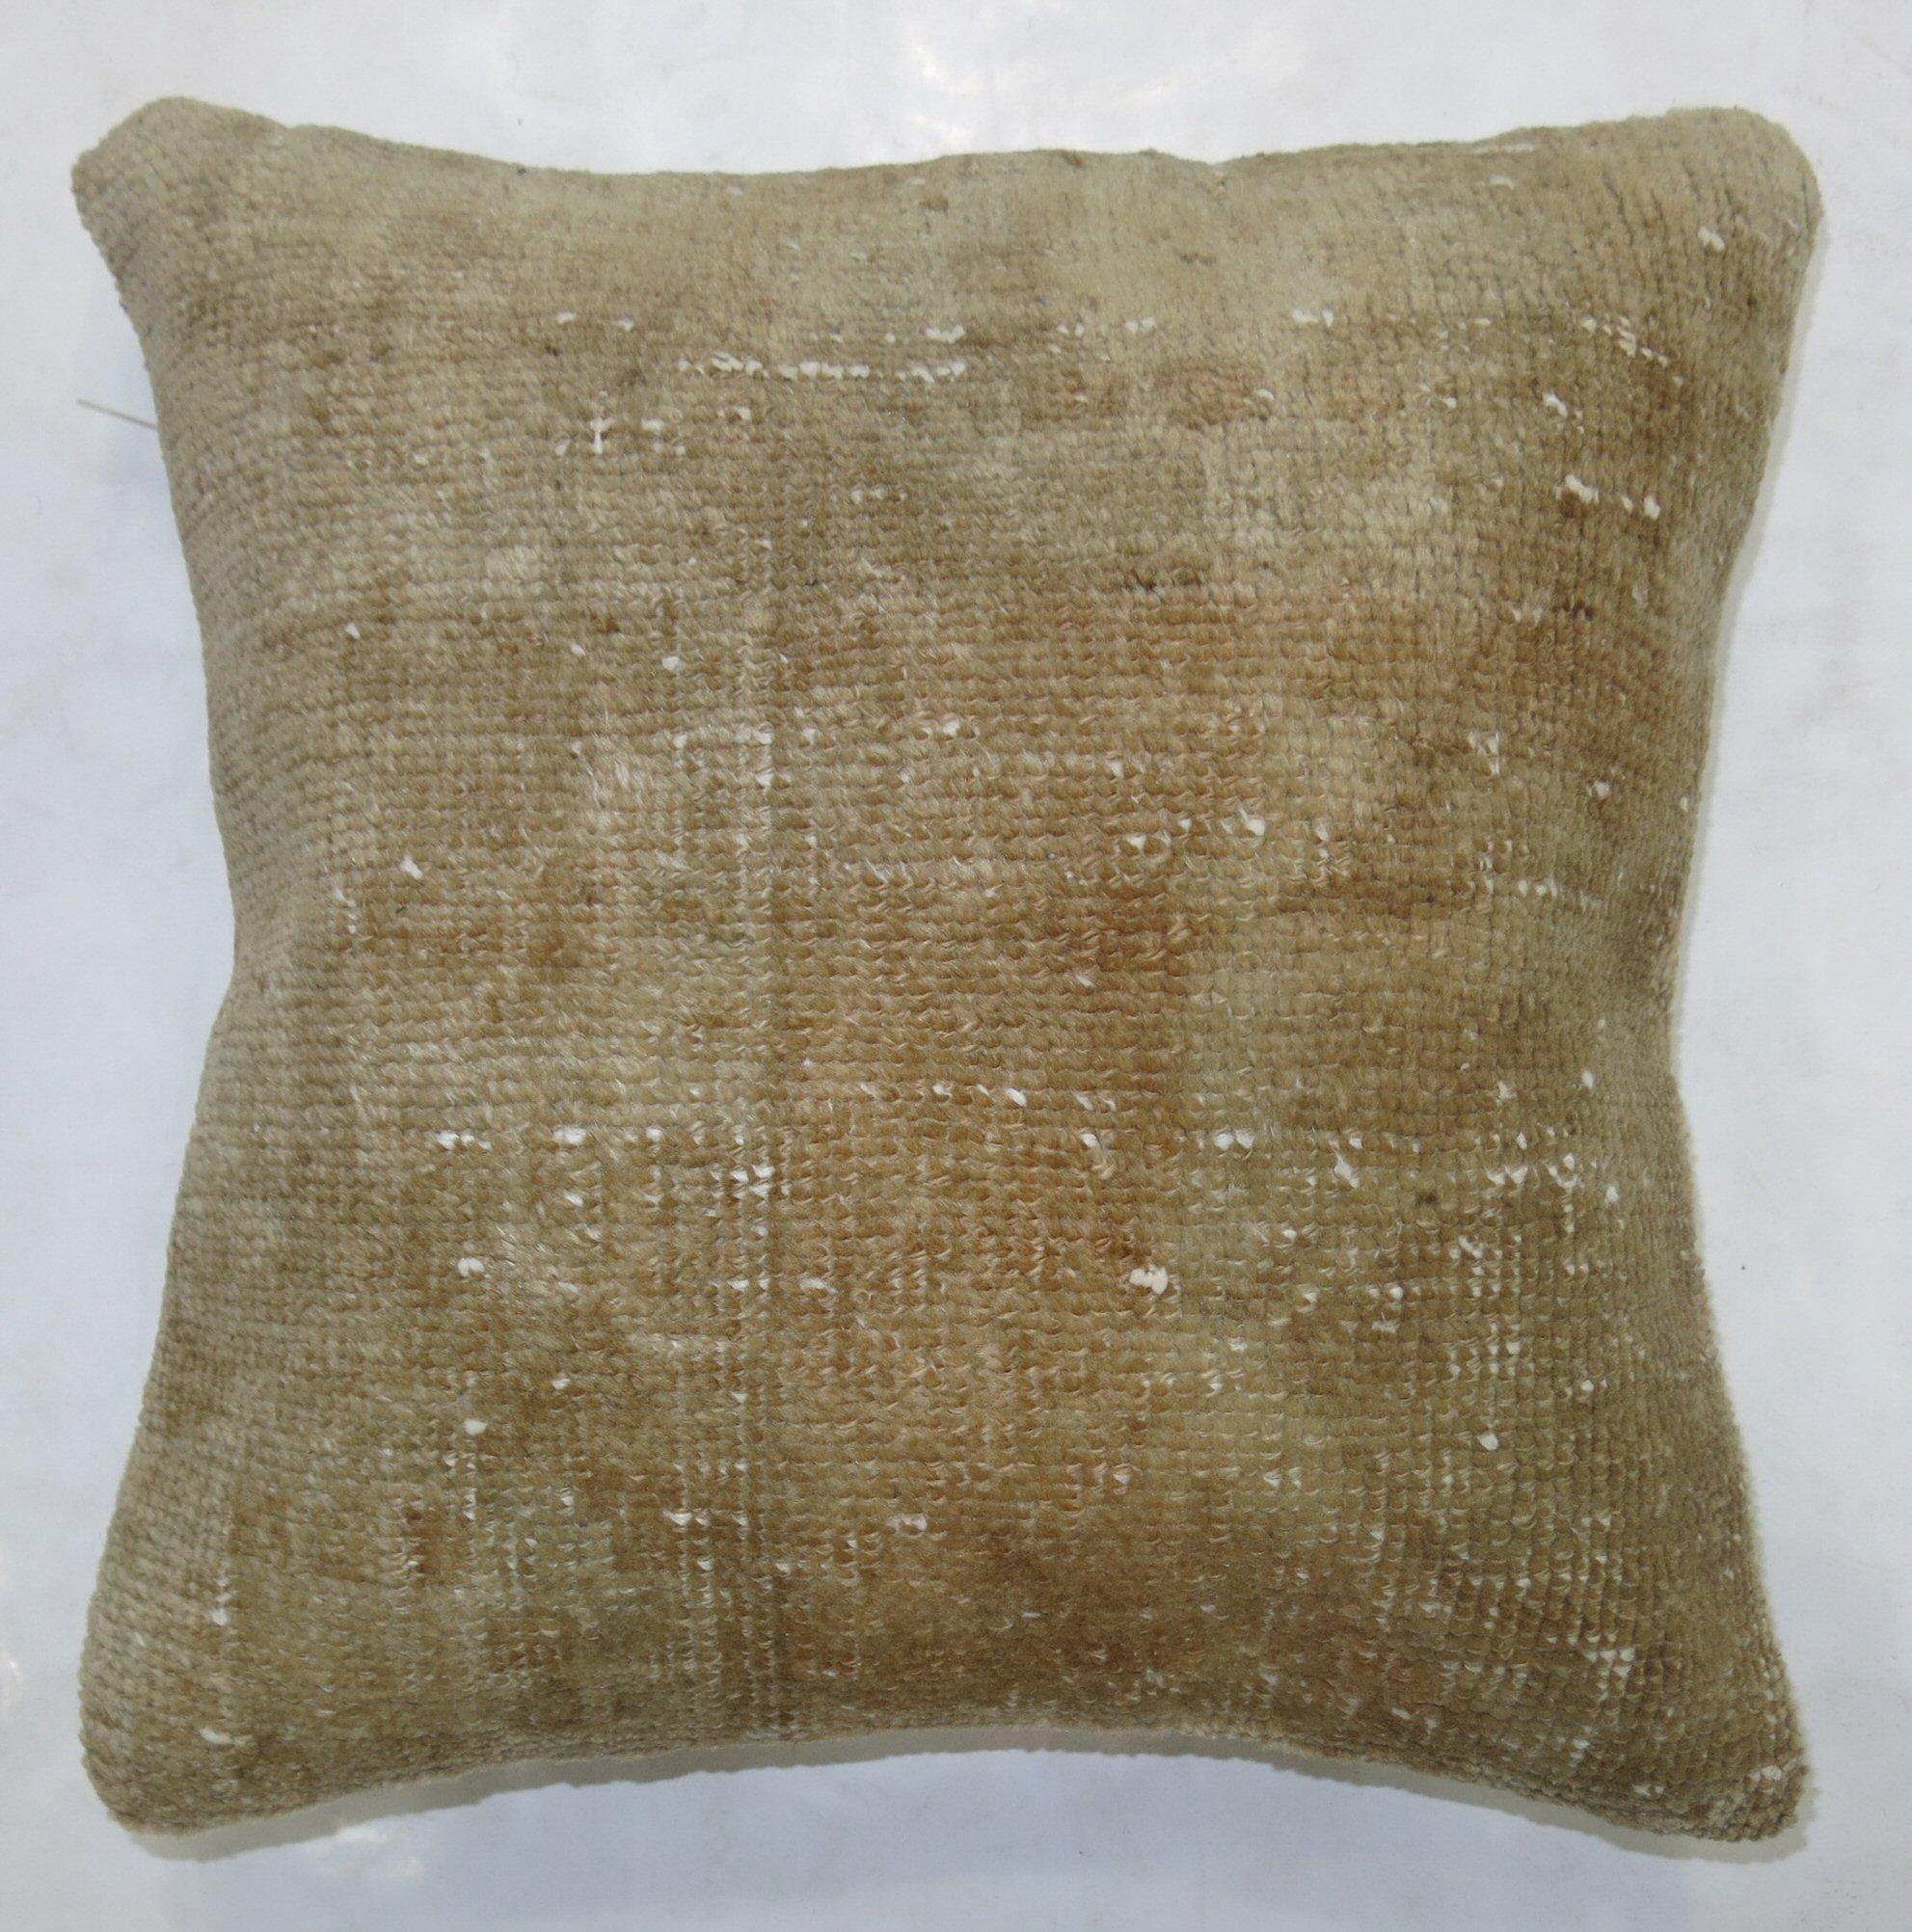 Einzigartiges Kissen aus einem türkischen Vintage-Teppich mit Baumwollrücken. Mit Reißverschluss und Schaumstoffeinlage.

16'' x 16''